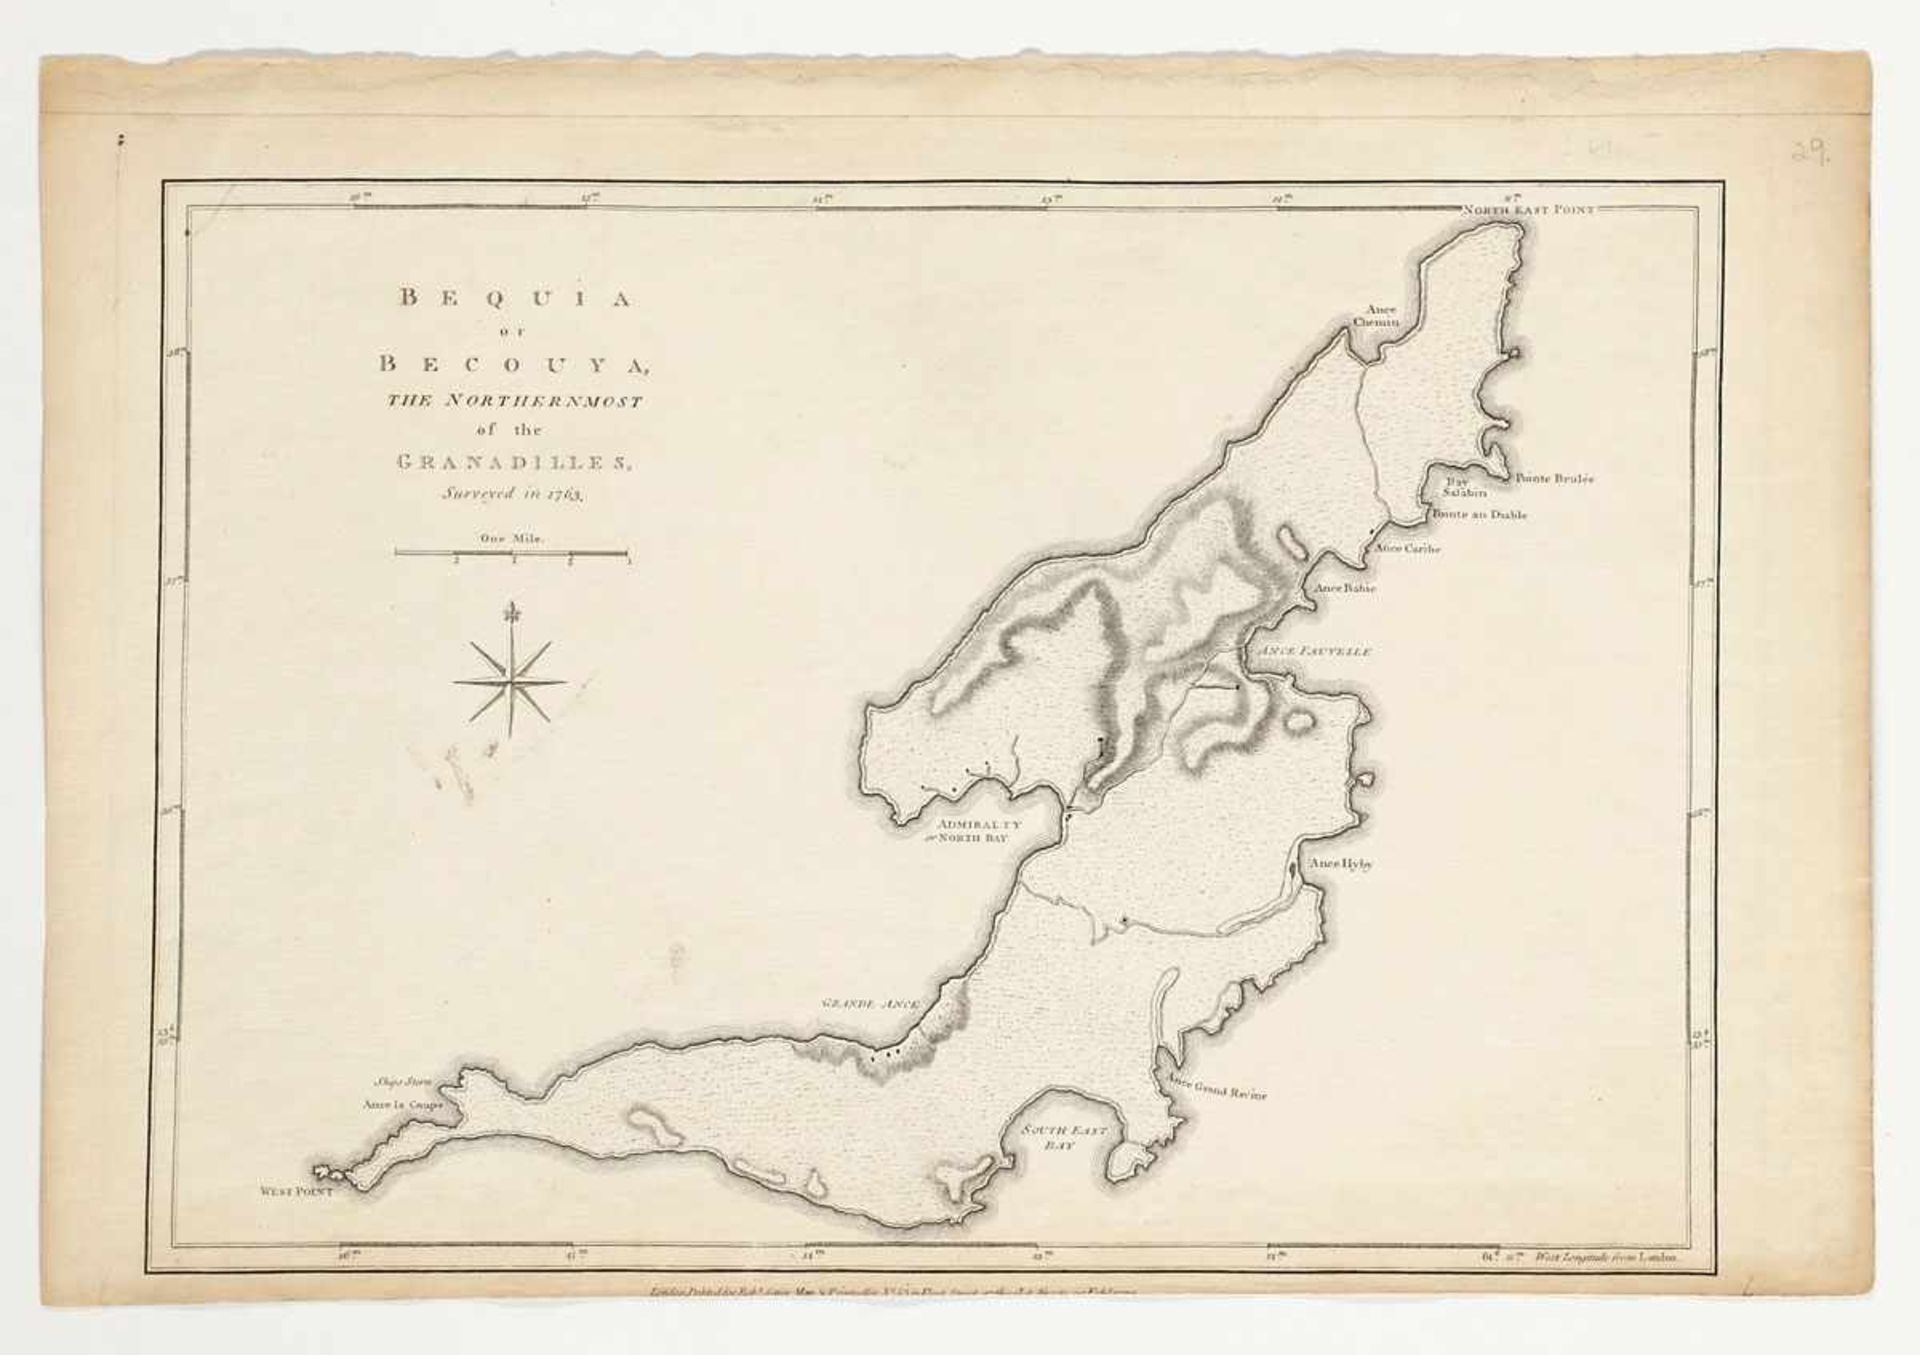 Kupferstecher des 18. Jahrhunderts- "Bequia or Becouya the northernmost of the Granadilles, Surveyed